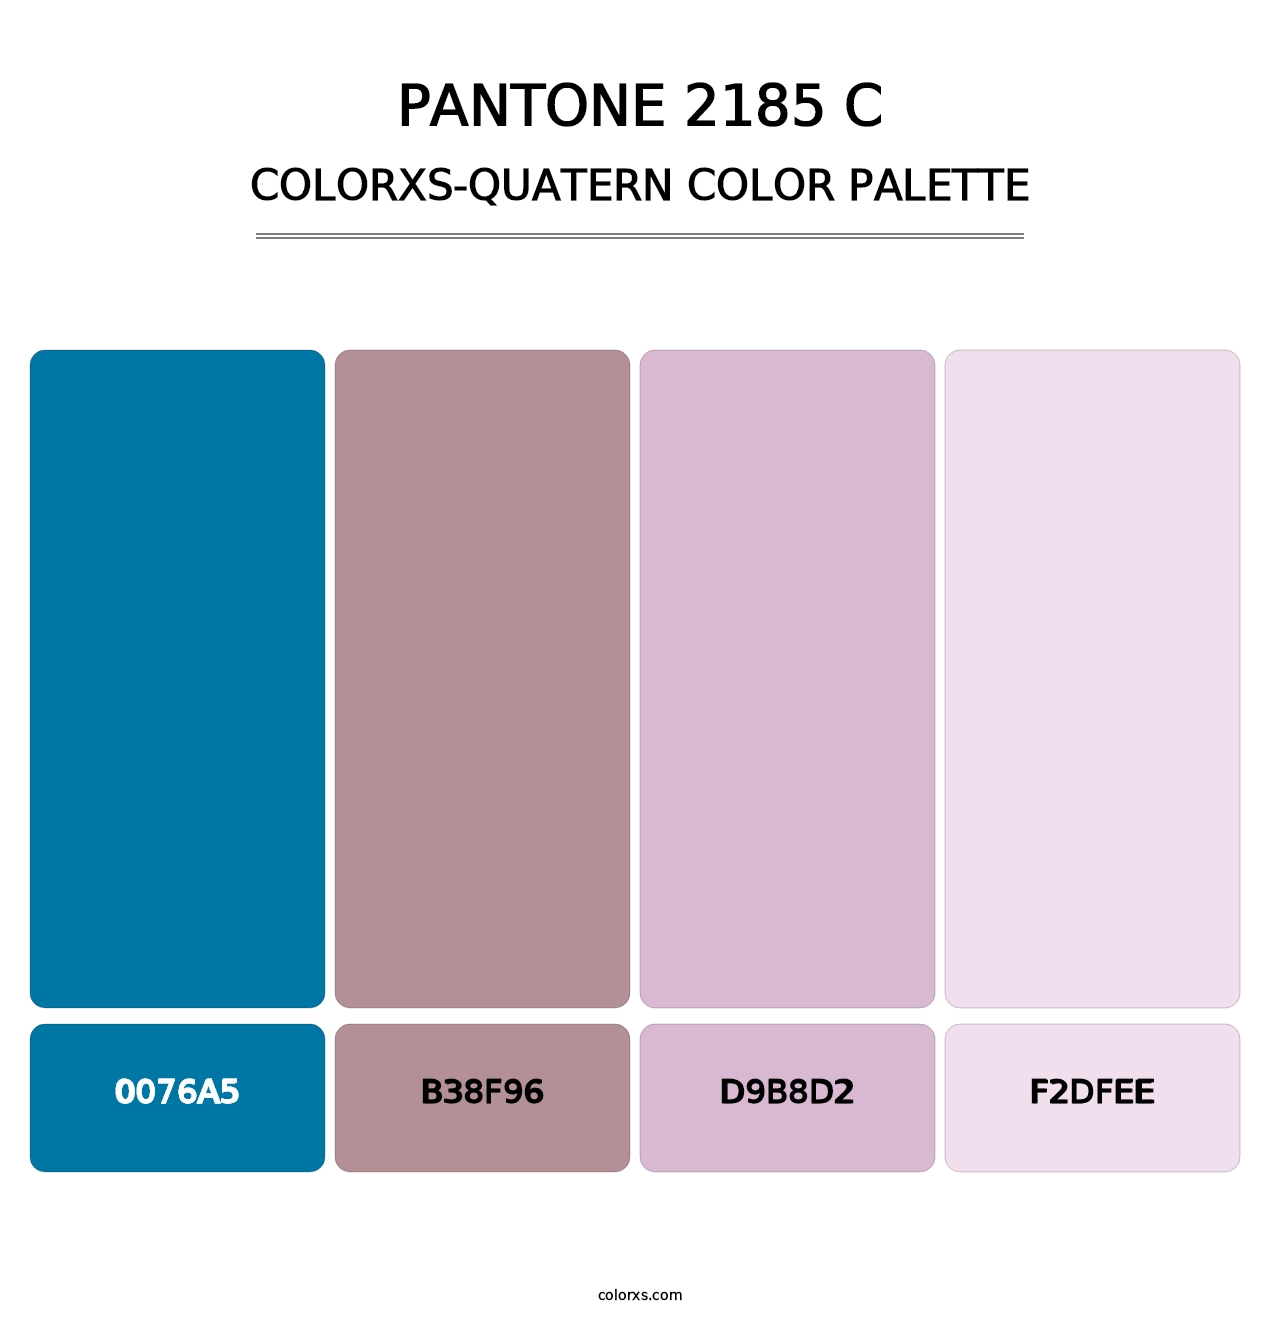 PANTONE 2185 C - Colorxs Quatern Palette